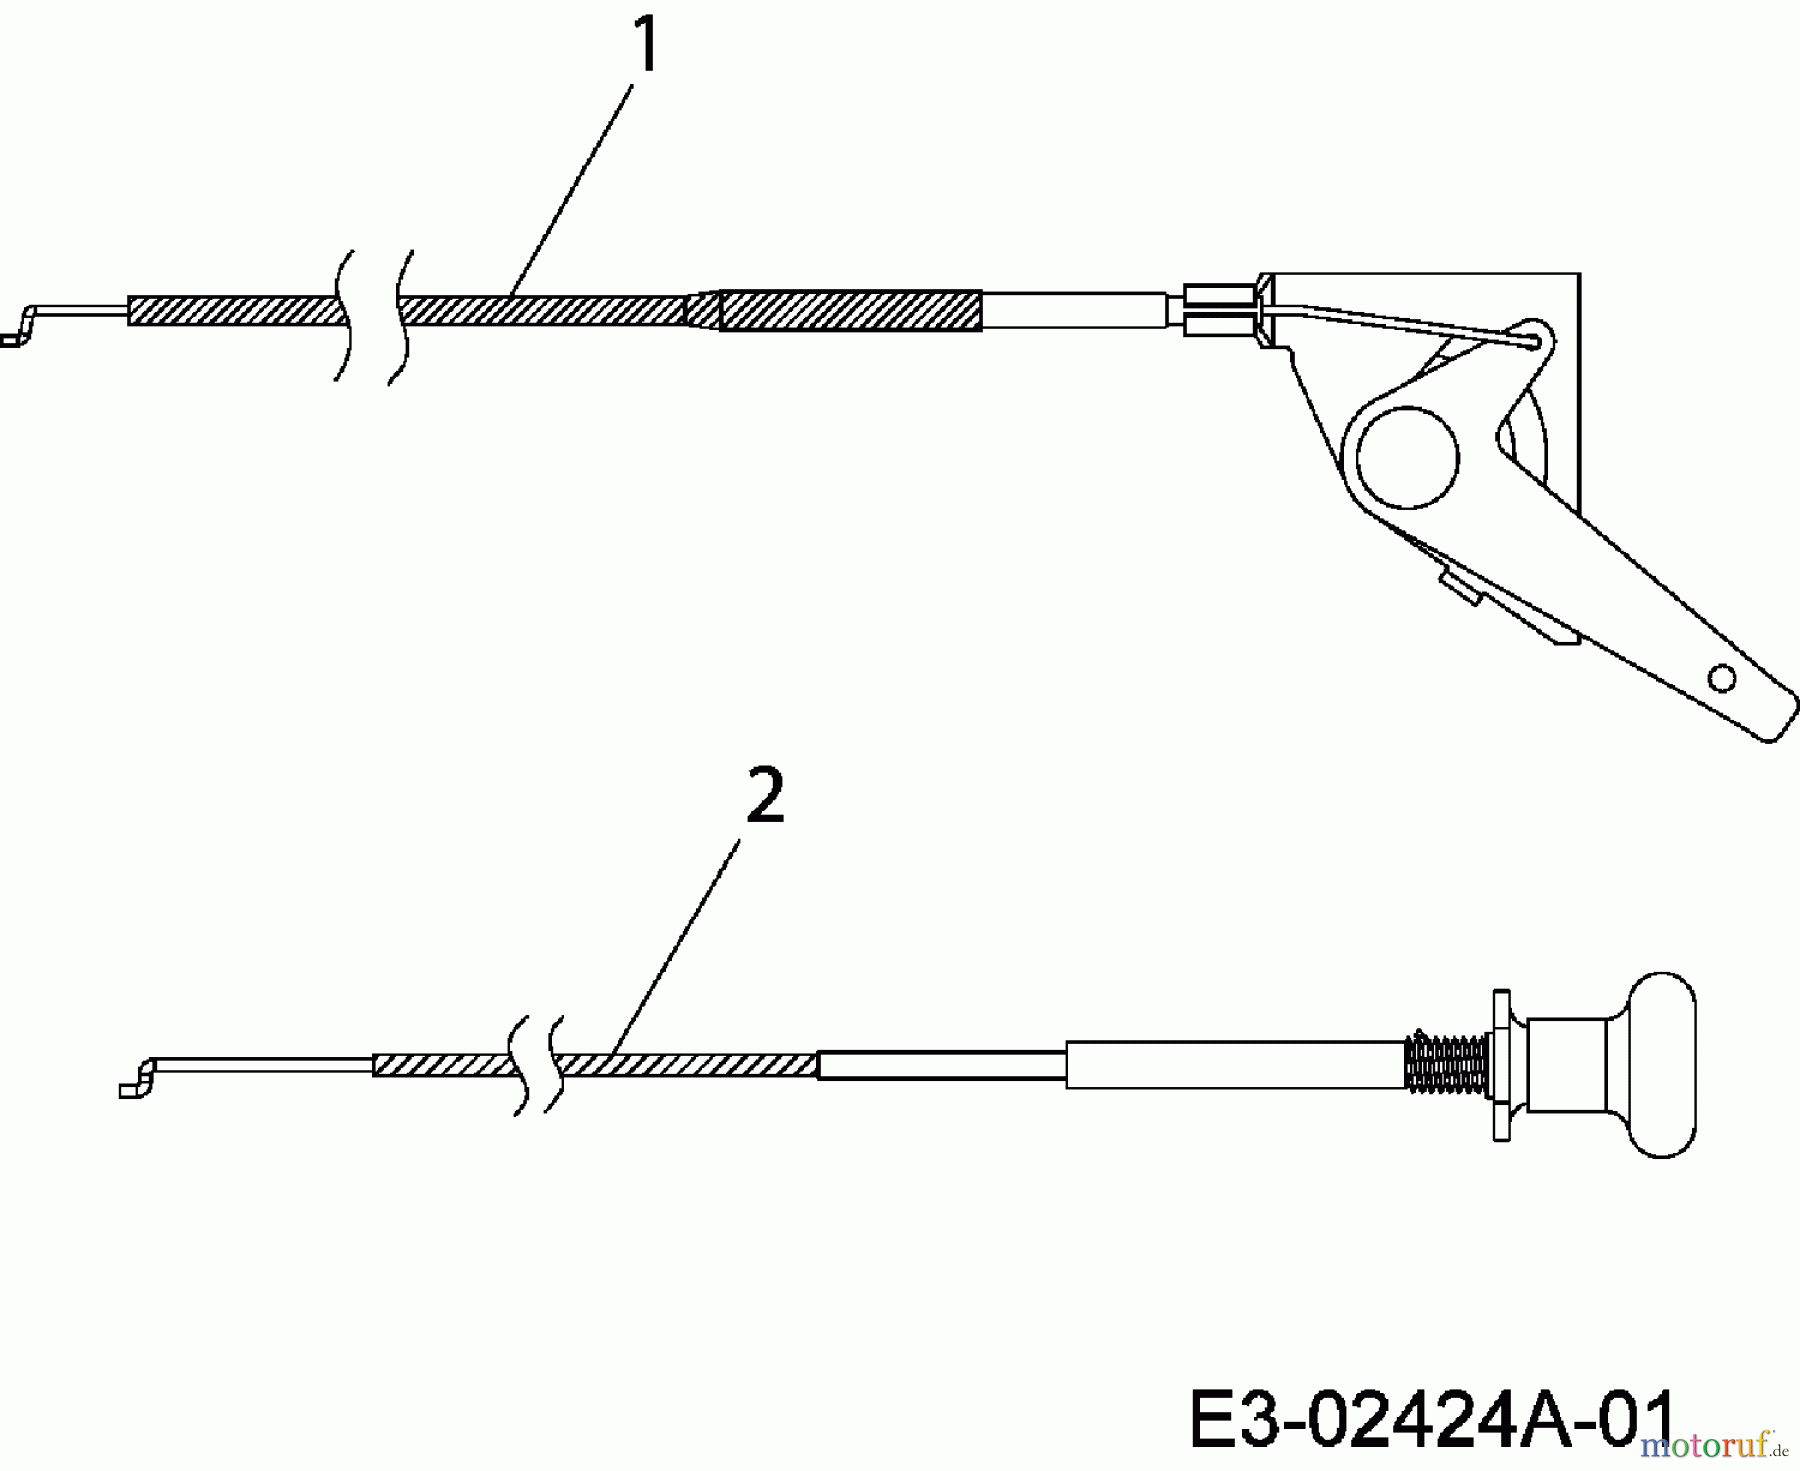  MTD Rasentraktoren RH 150/105 13A3488N400  (2006) Choke- und Gaszug